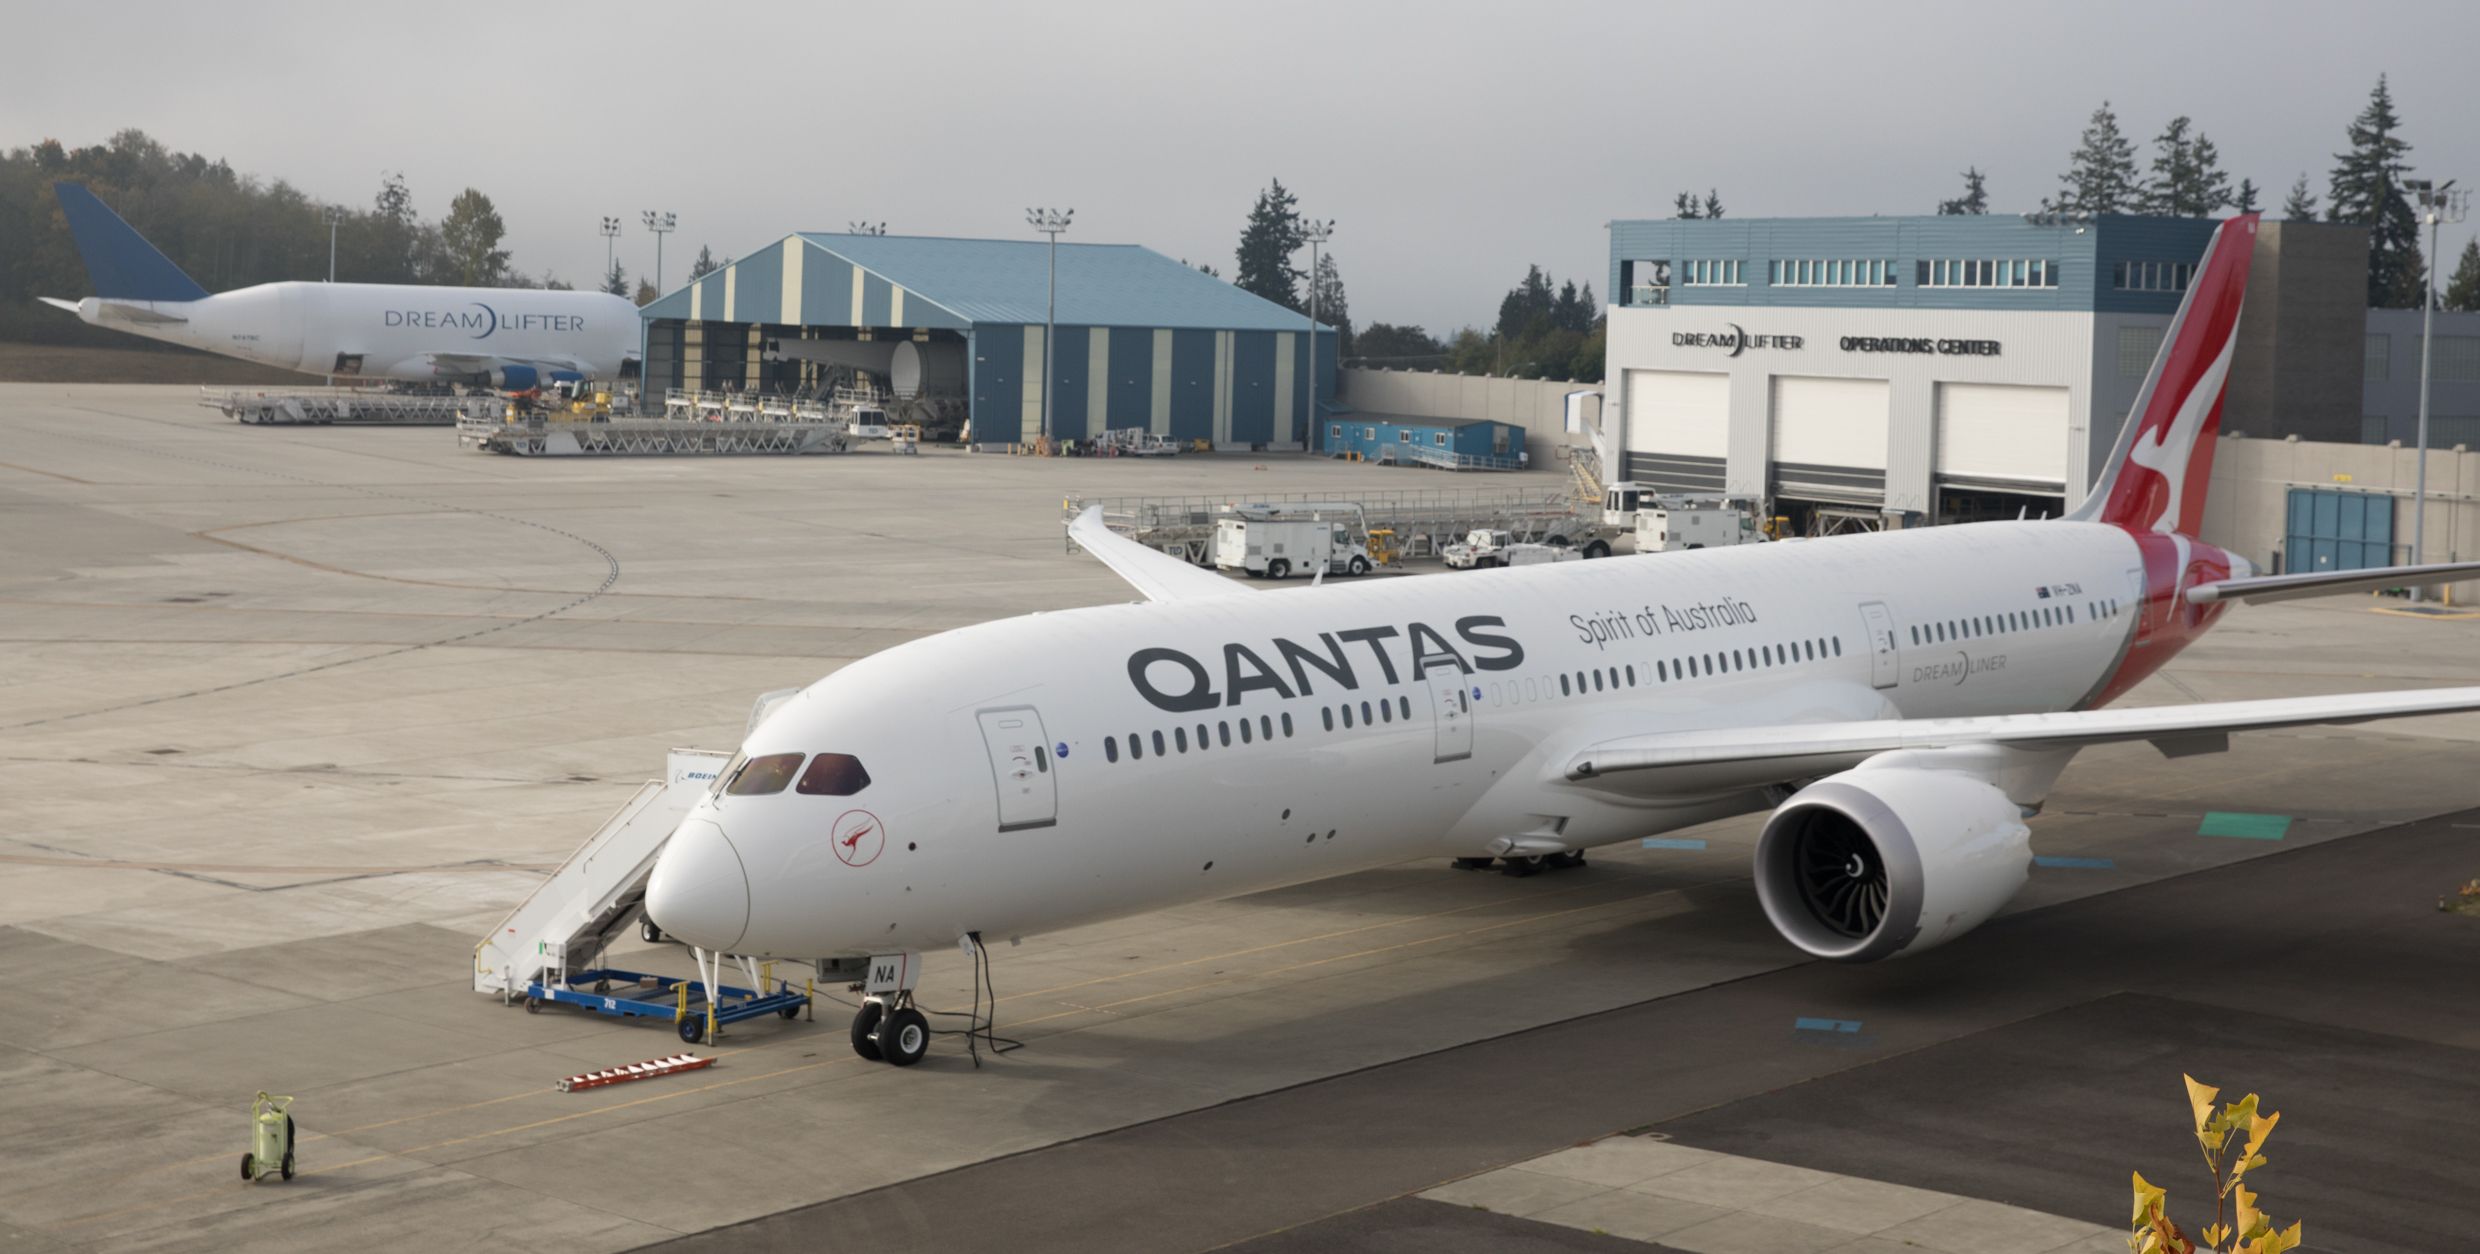 A Qantas aircraft parked near a hangar